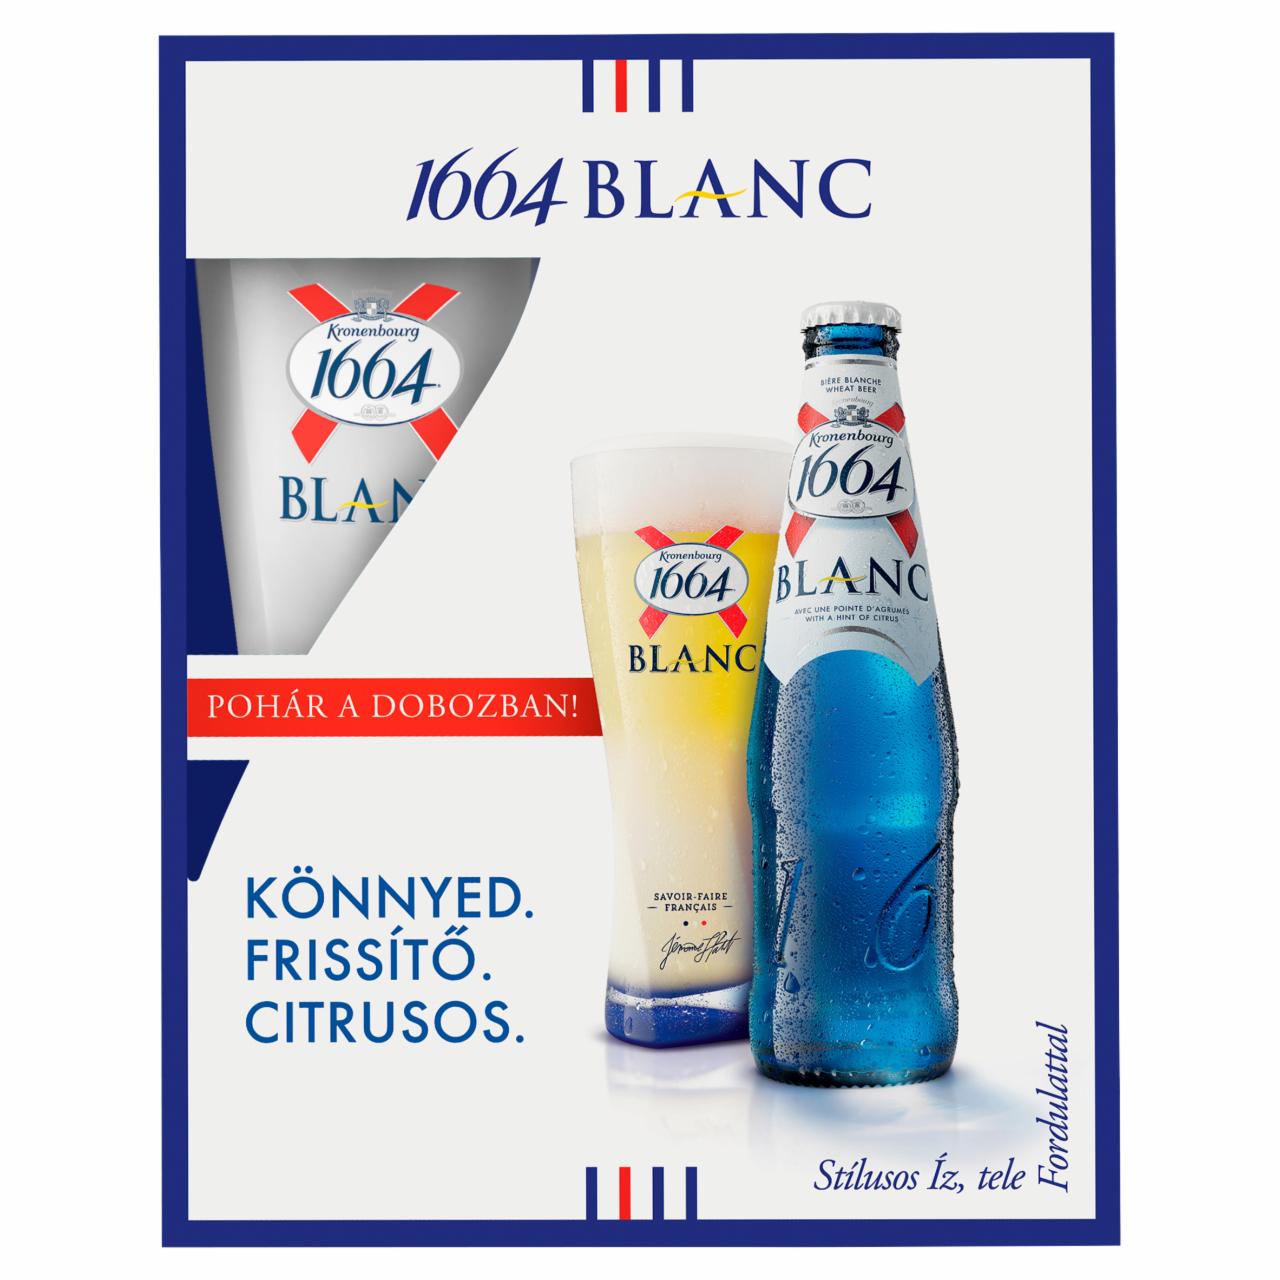 Képek - Kronenbourg 1664 Blanc búzasör 5% 5 x 0,33 l + 1 pohár